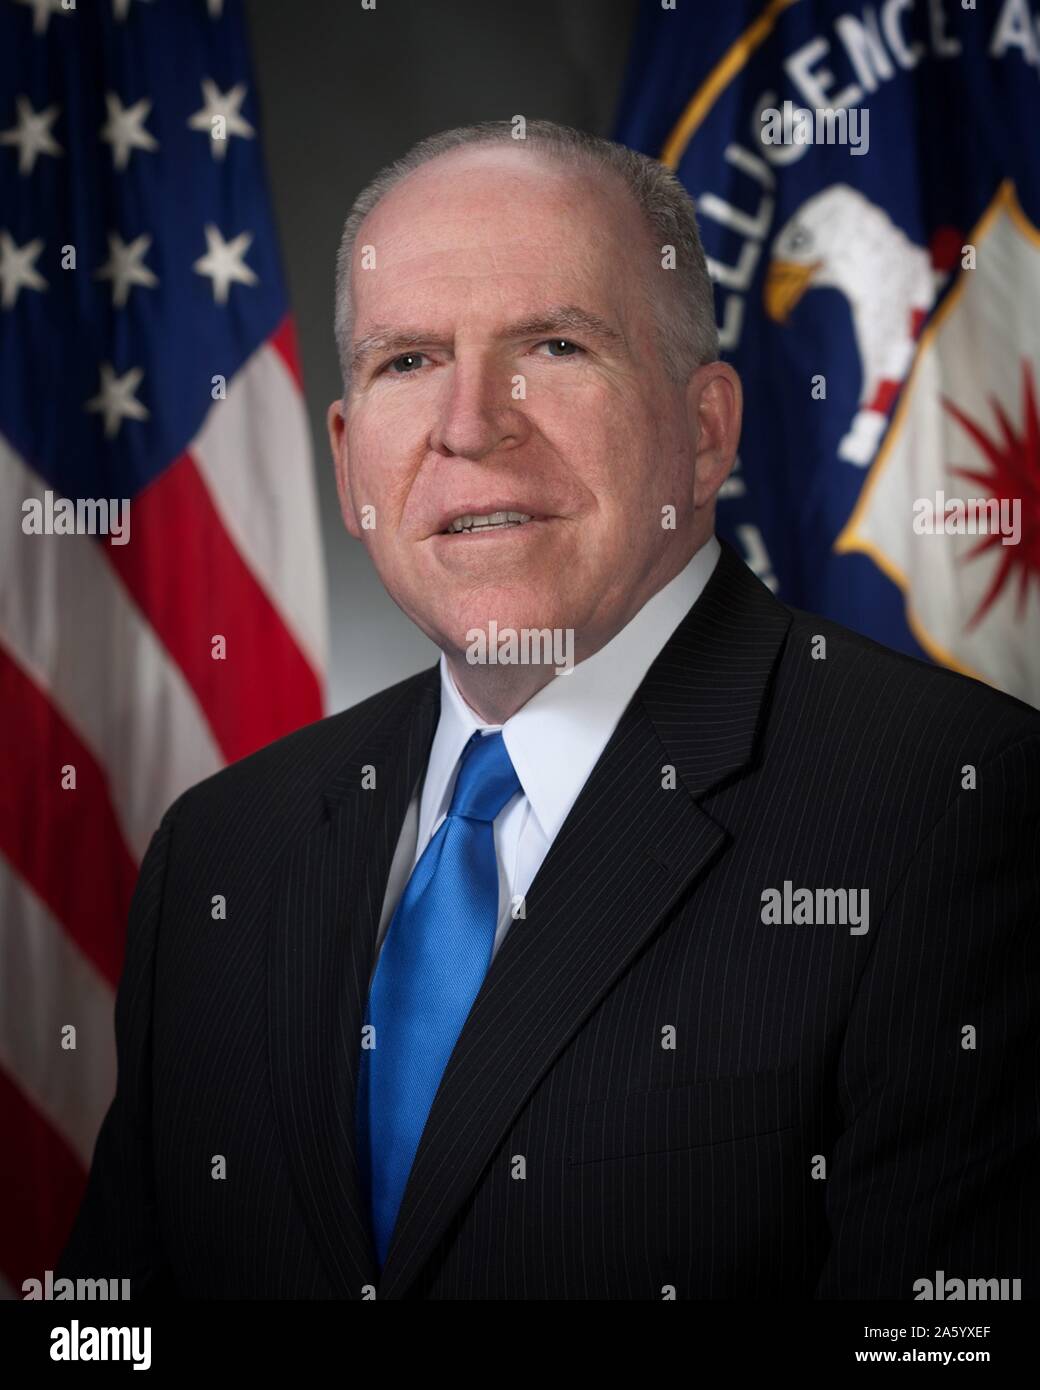 Fotografia di John O. Brennan (1955-) un governo americano ufficiale e direttore della Central Intelligence Agency. Datata 2013 Foto Stock